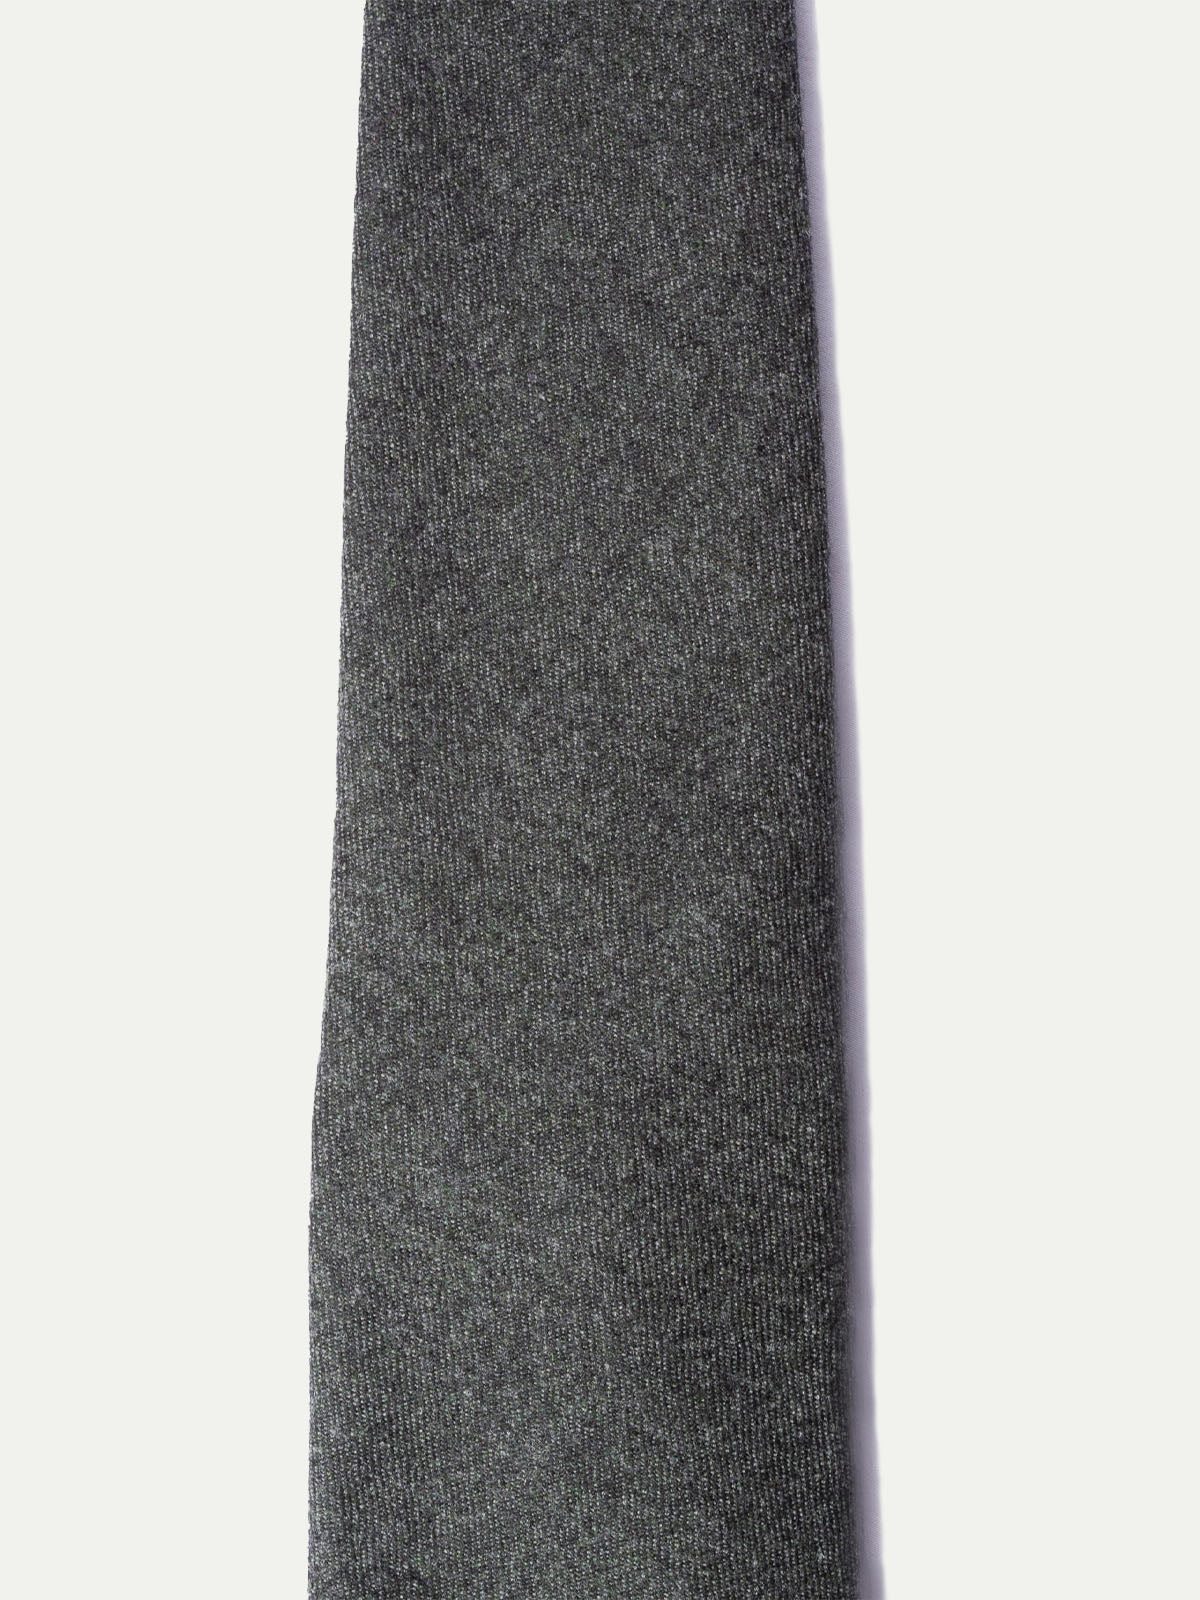 Cravate en flanelle vert foncé - Fabriquée à la main en Italie